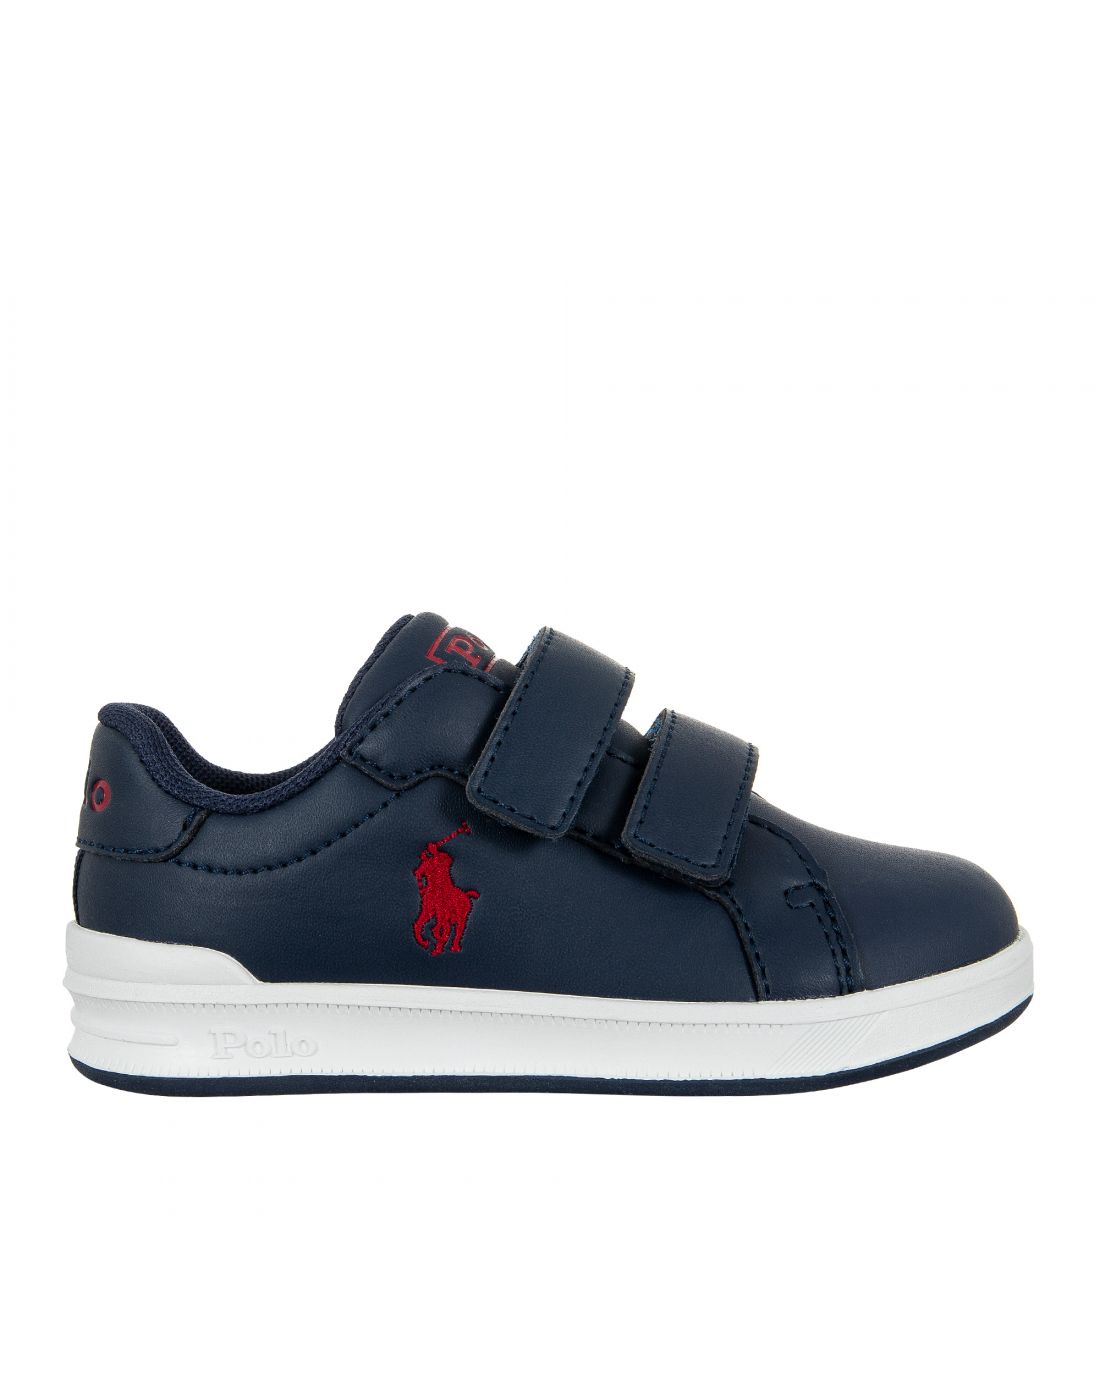 Παιδικά Παπούτσια Sneakers Polo Ralph Lauren, Polo Ralph Lauren, 23265389 |  LapinKids.com | LAPIN KIDS